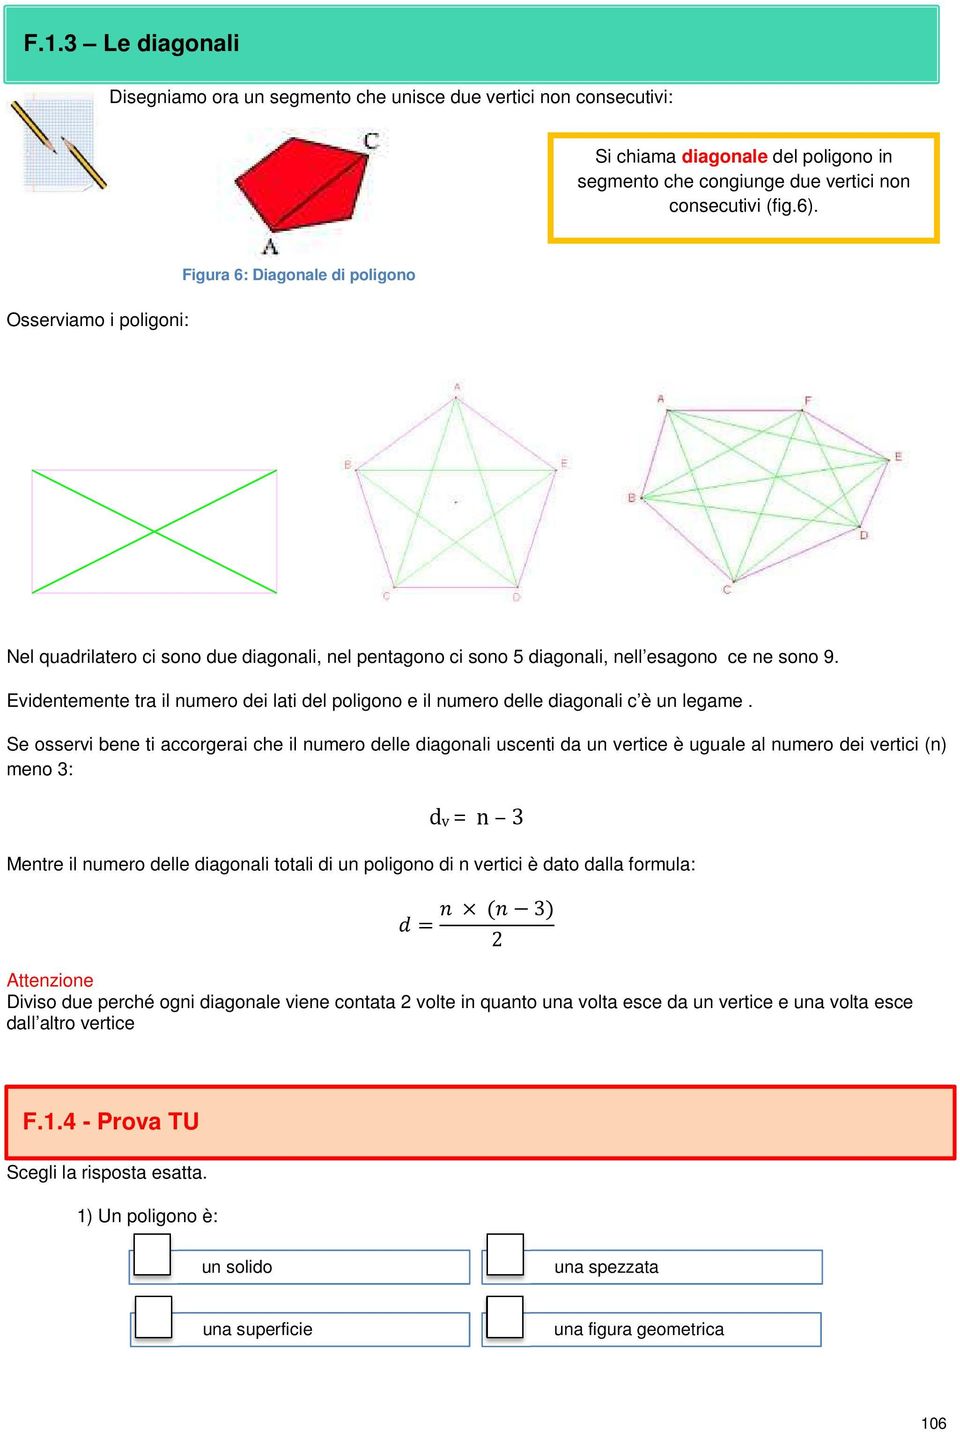 Evidentemente tra il numero dei lati del poligono e il numero delle diagonali c è un legame.